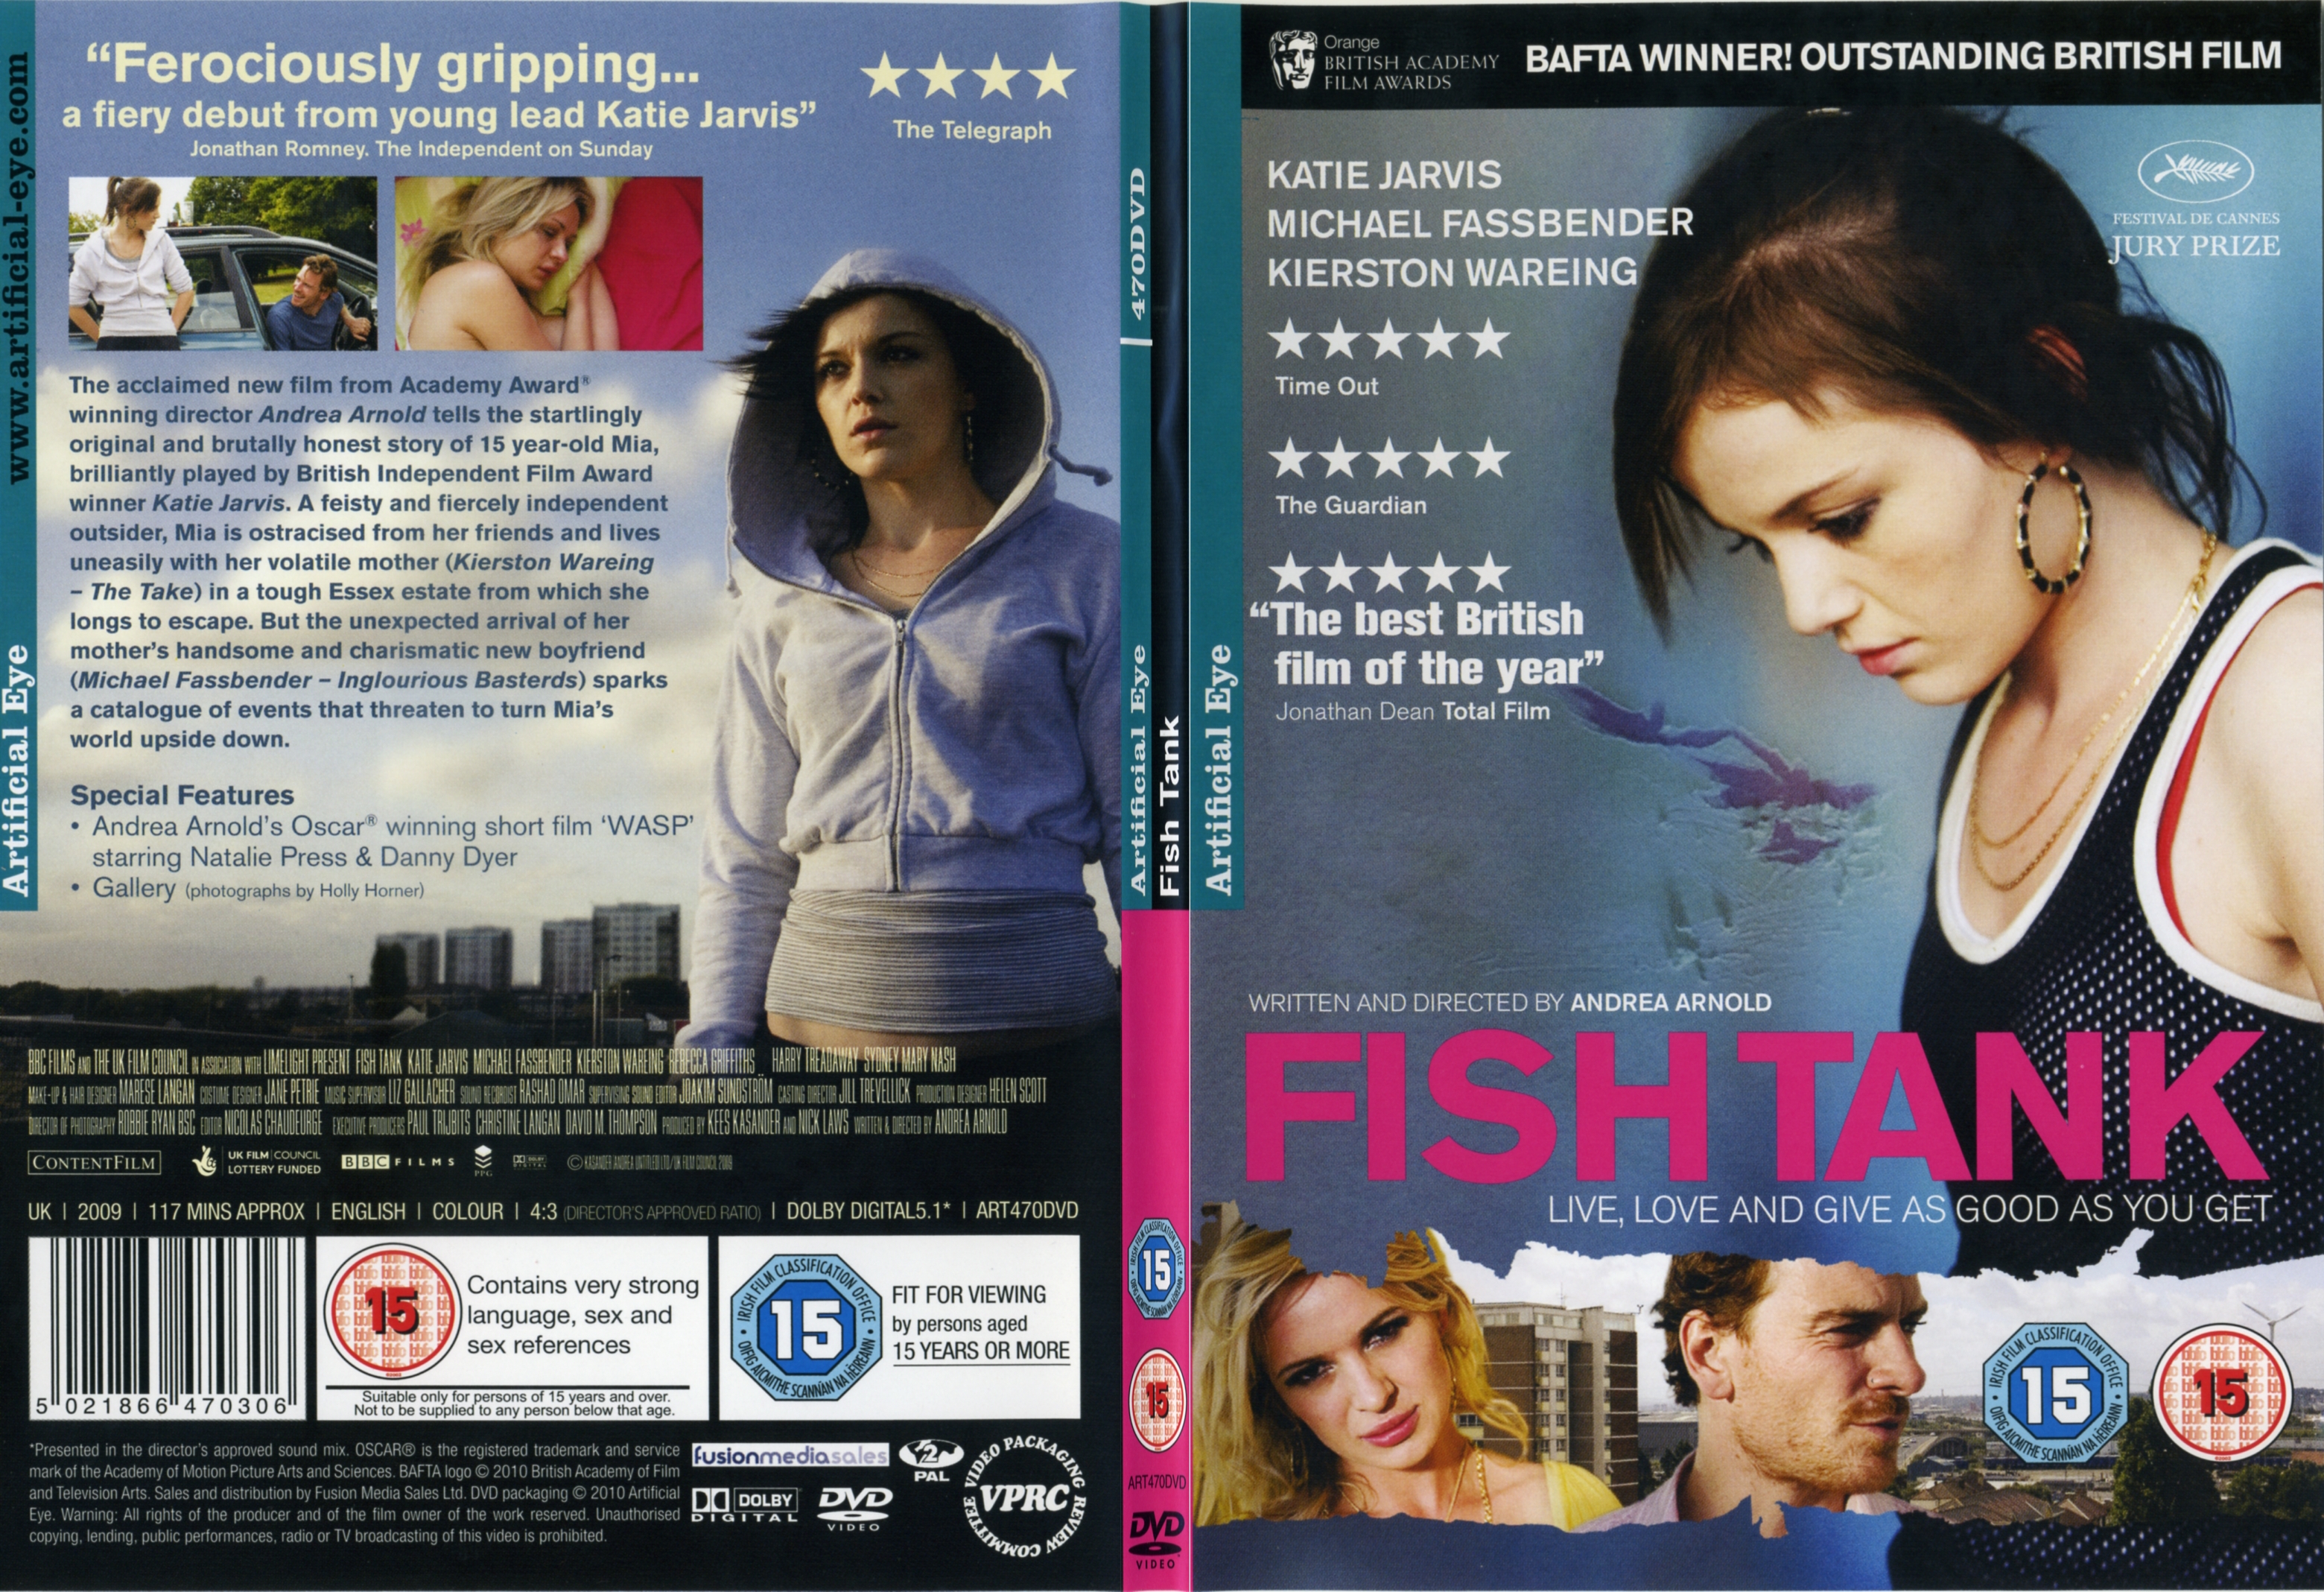 Jaquette DVD de Fish tank Zone 1 - SLIM - Cinéma Passion